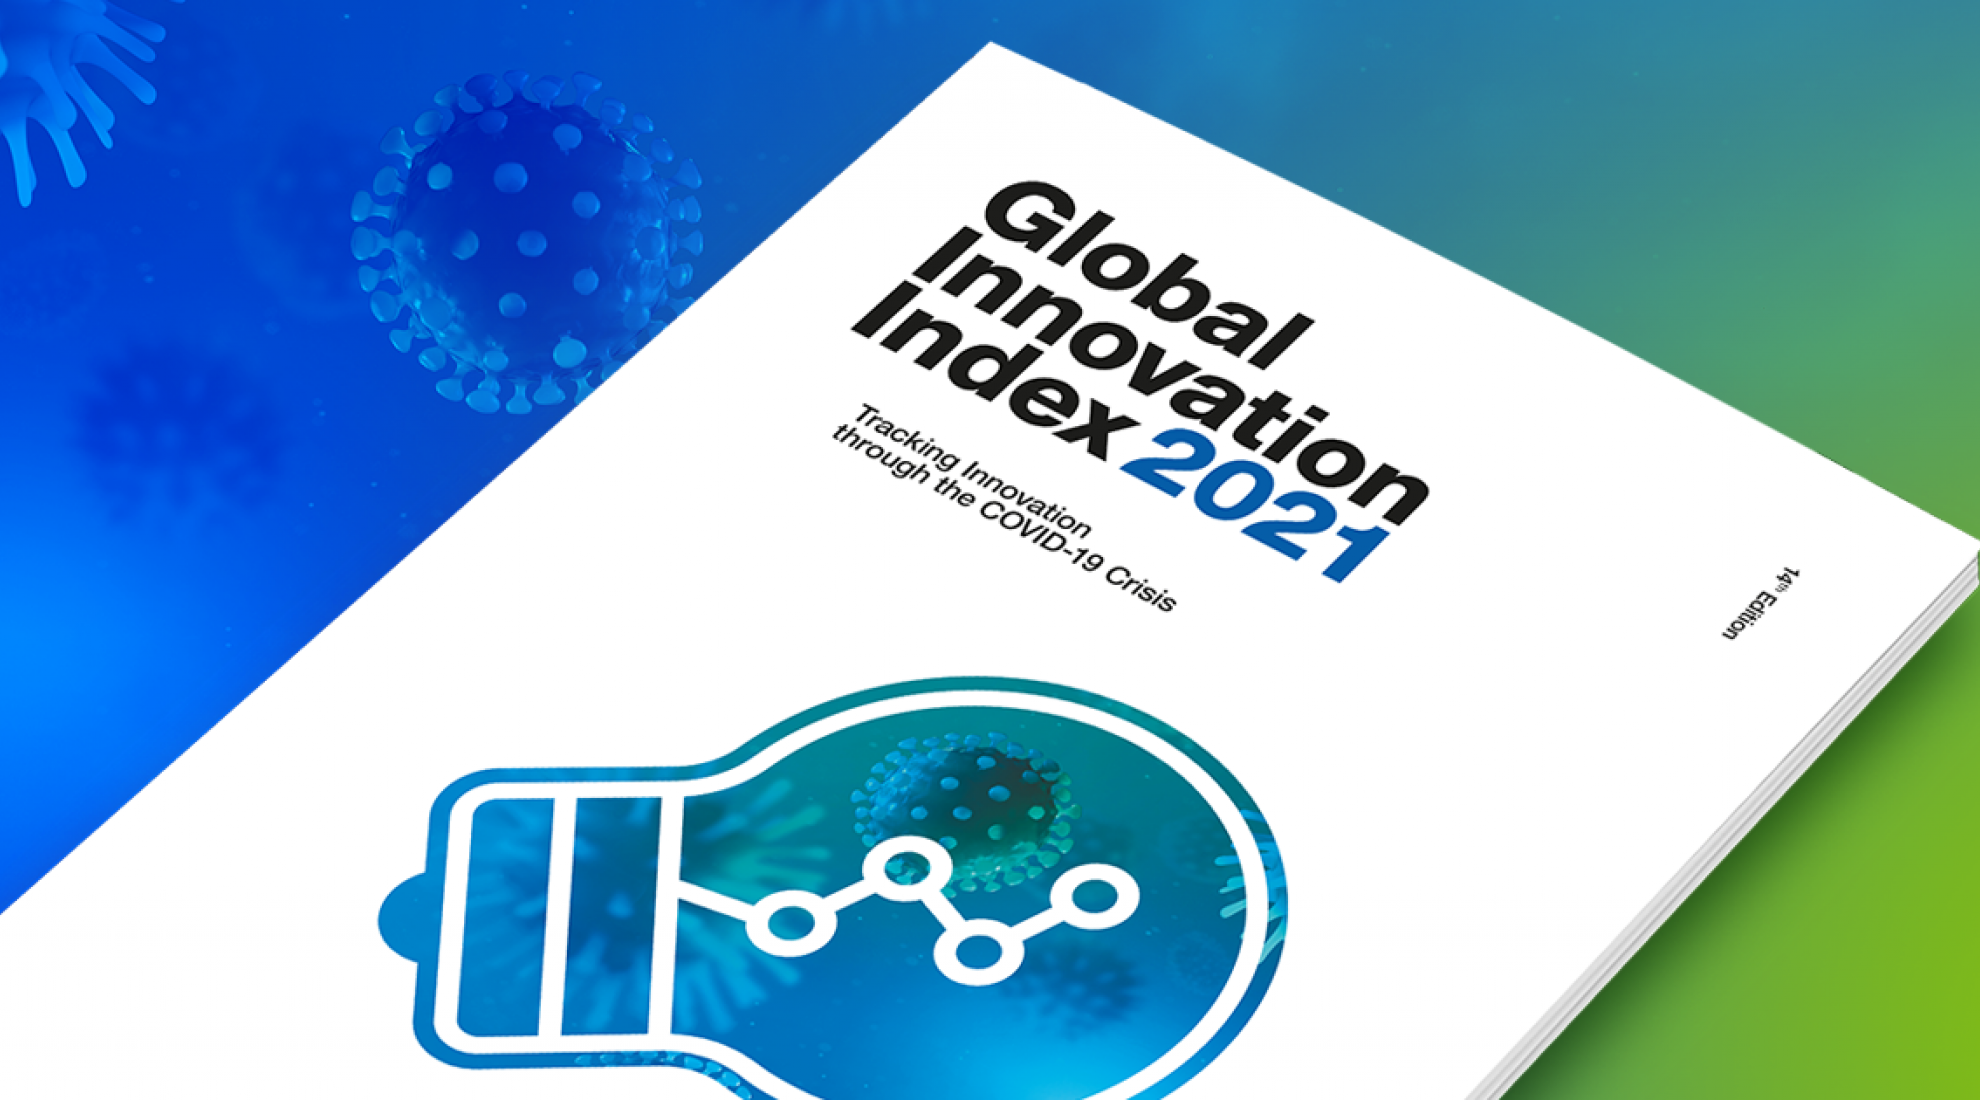 Global Innovation Index 2021